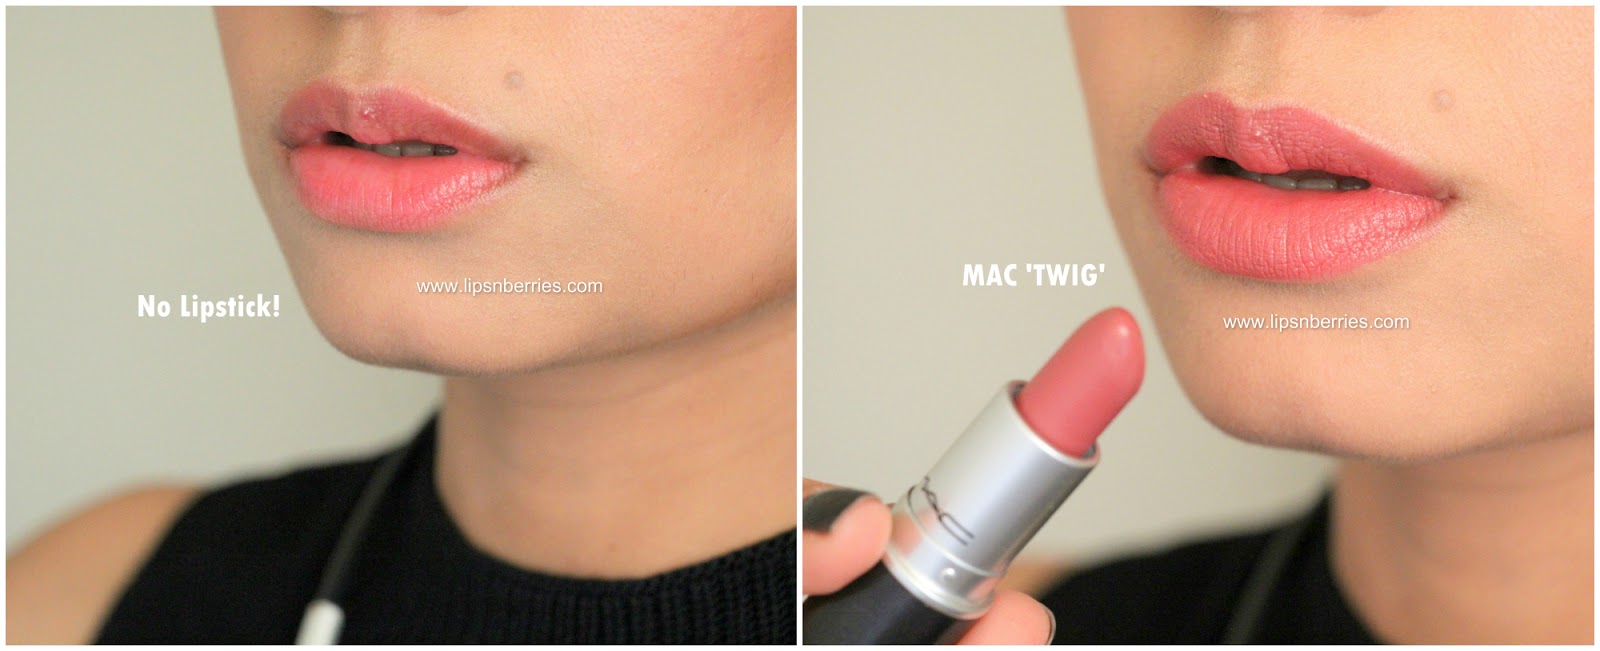 Nu Sociaal Ingang MAC Lipstick in 'Twig' Review | LIPS n BERRIES